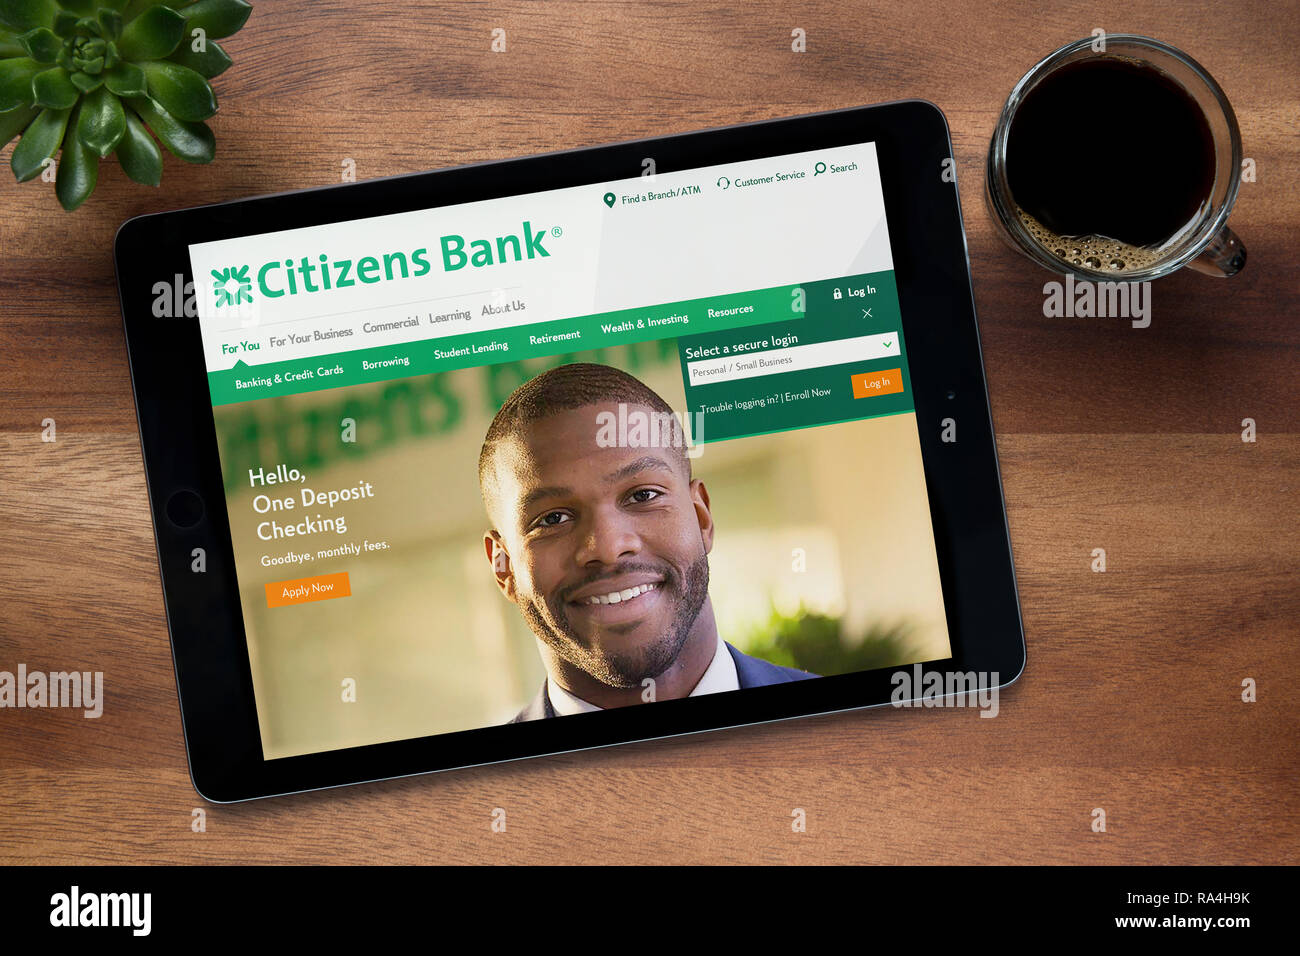 Le site internet de la Citizens Bank est vu sur un iPad tablet, sur une table en bois avec une machine à expresso et d'une plante (usage éditorial uniquement). Banque D'Images